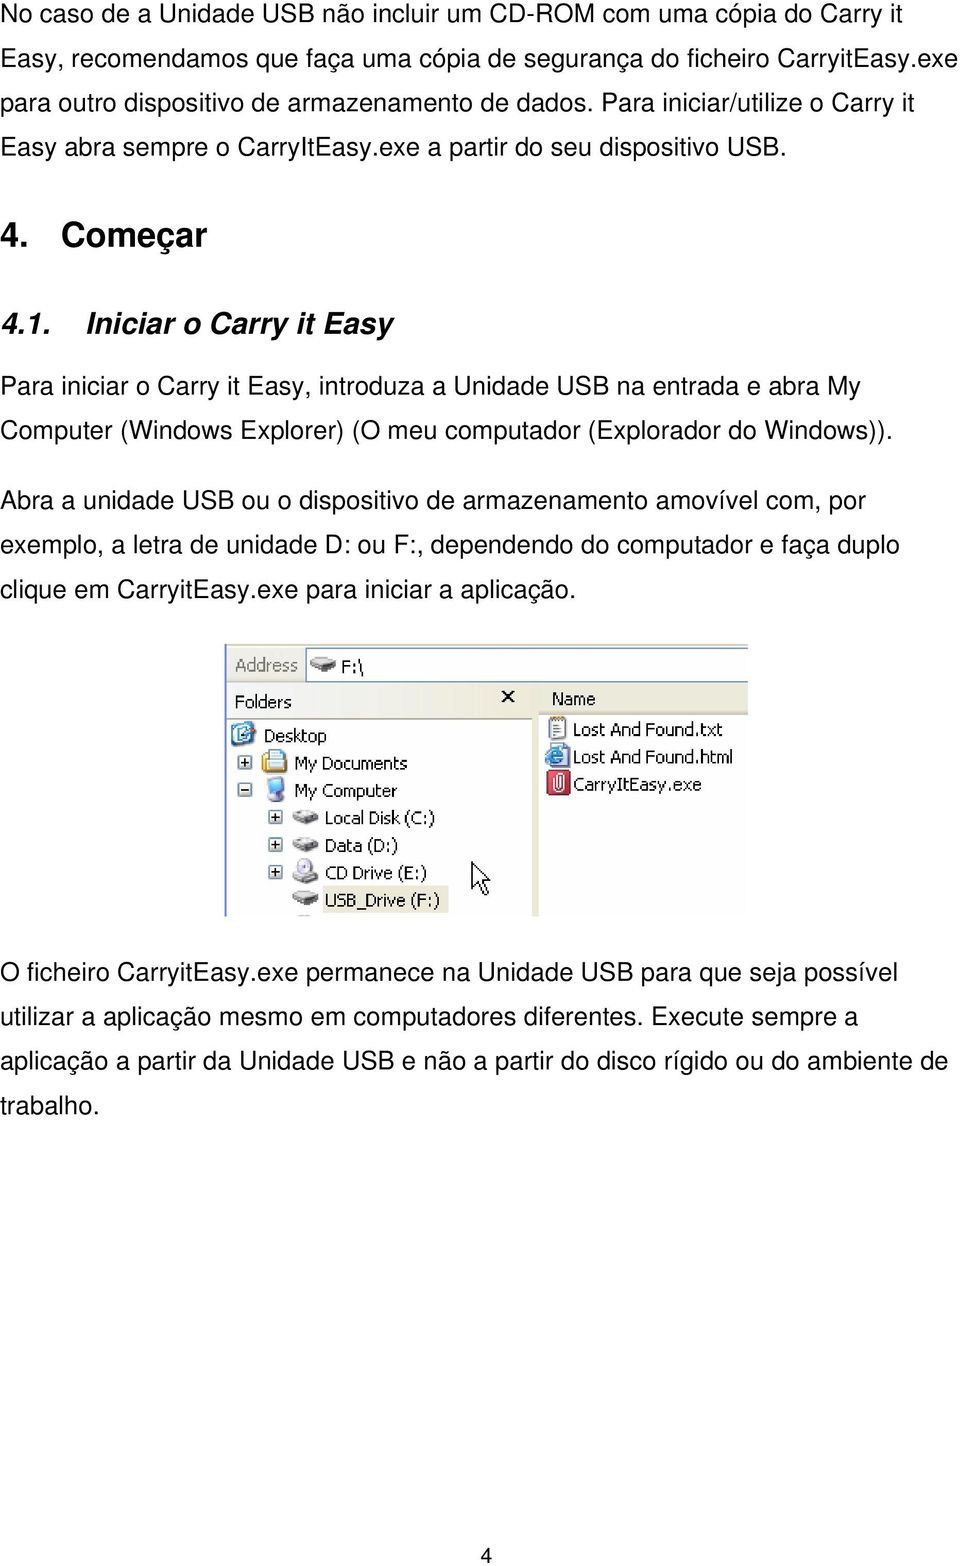 Iniciar o Carry it Easy Para iniciar o Carry it Easy, introduza a Unidade USB na entrada e abra My Computer (Windows Explorer) (O meu computador (Explorador do Windows)).